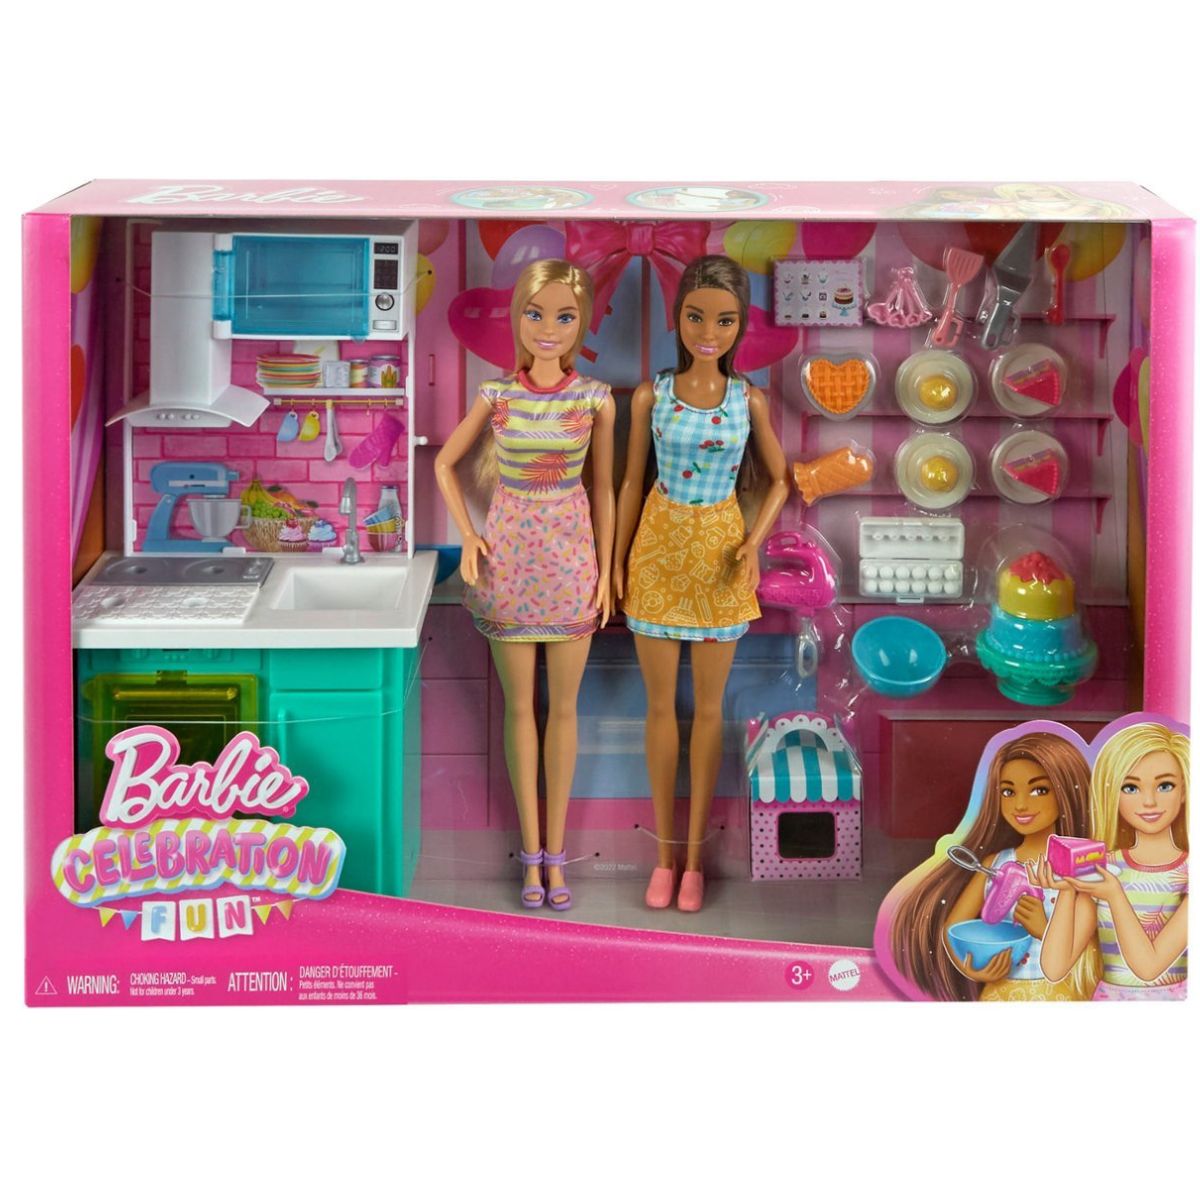 Artigos de Festa da Barbie - Tudo para Aniversários!